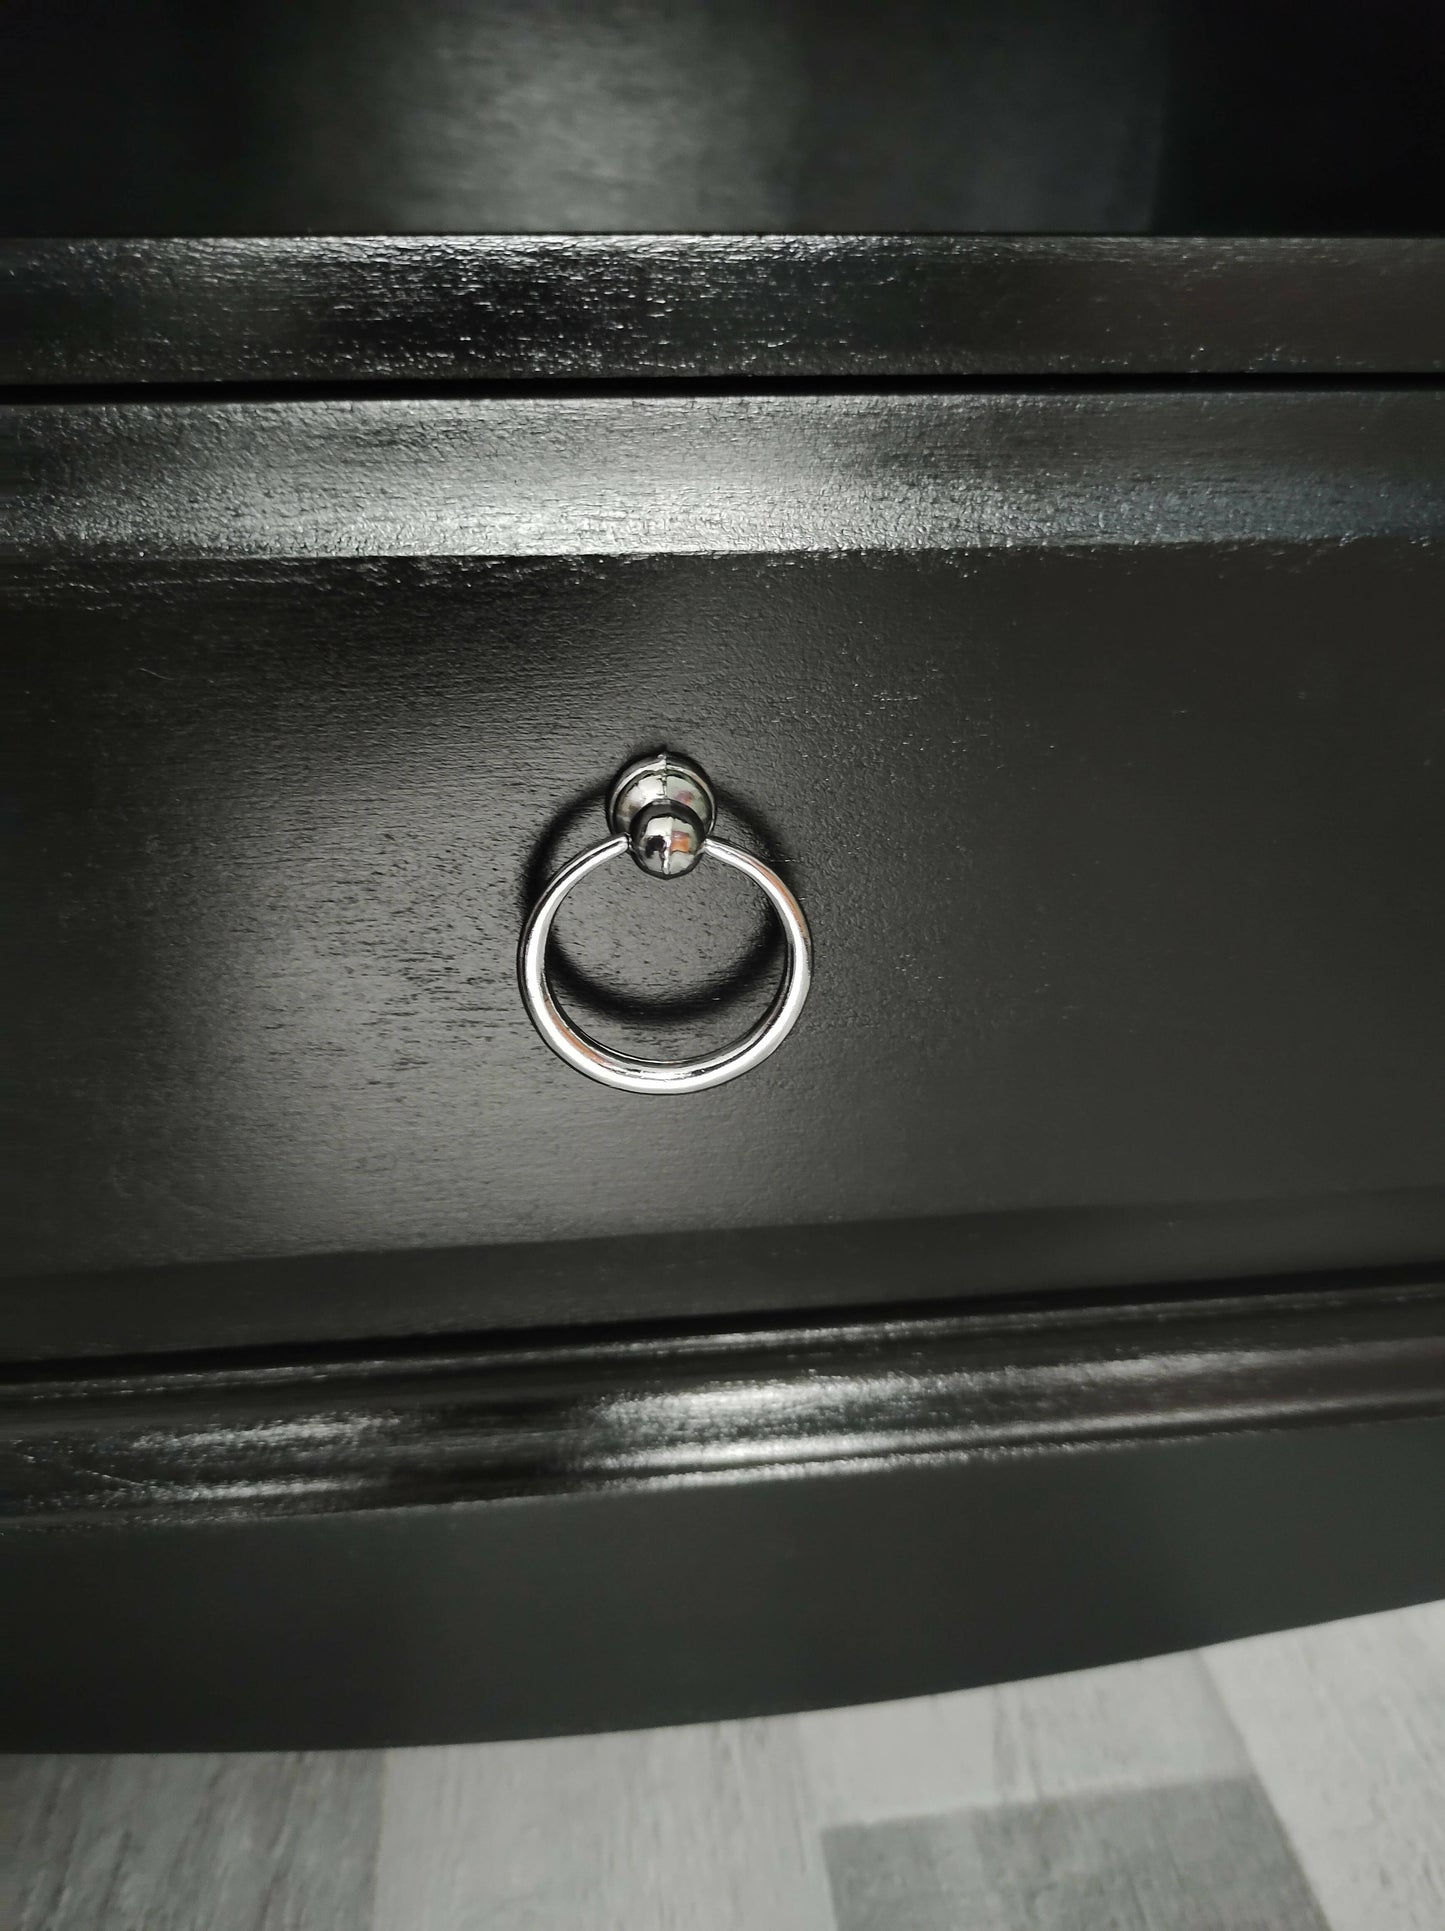 Vintage Black Stag Bedside Cabinets